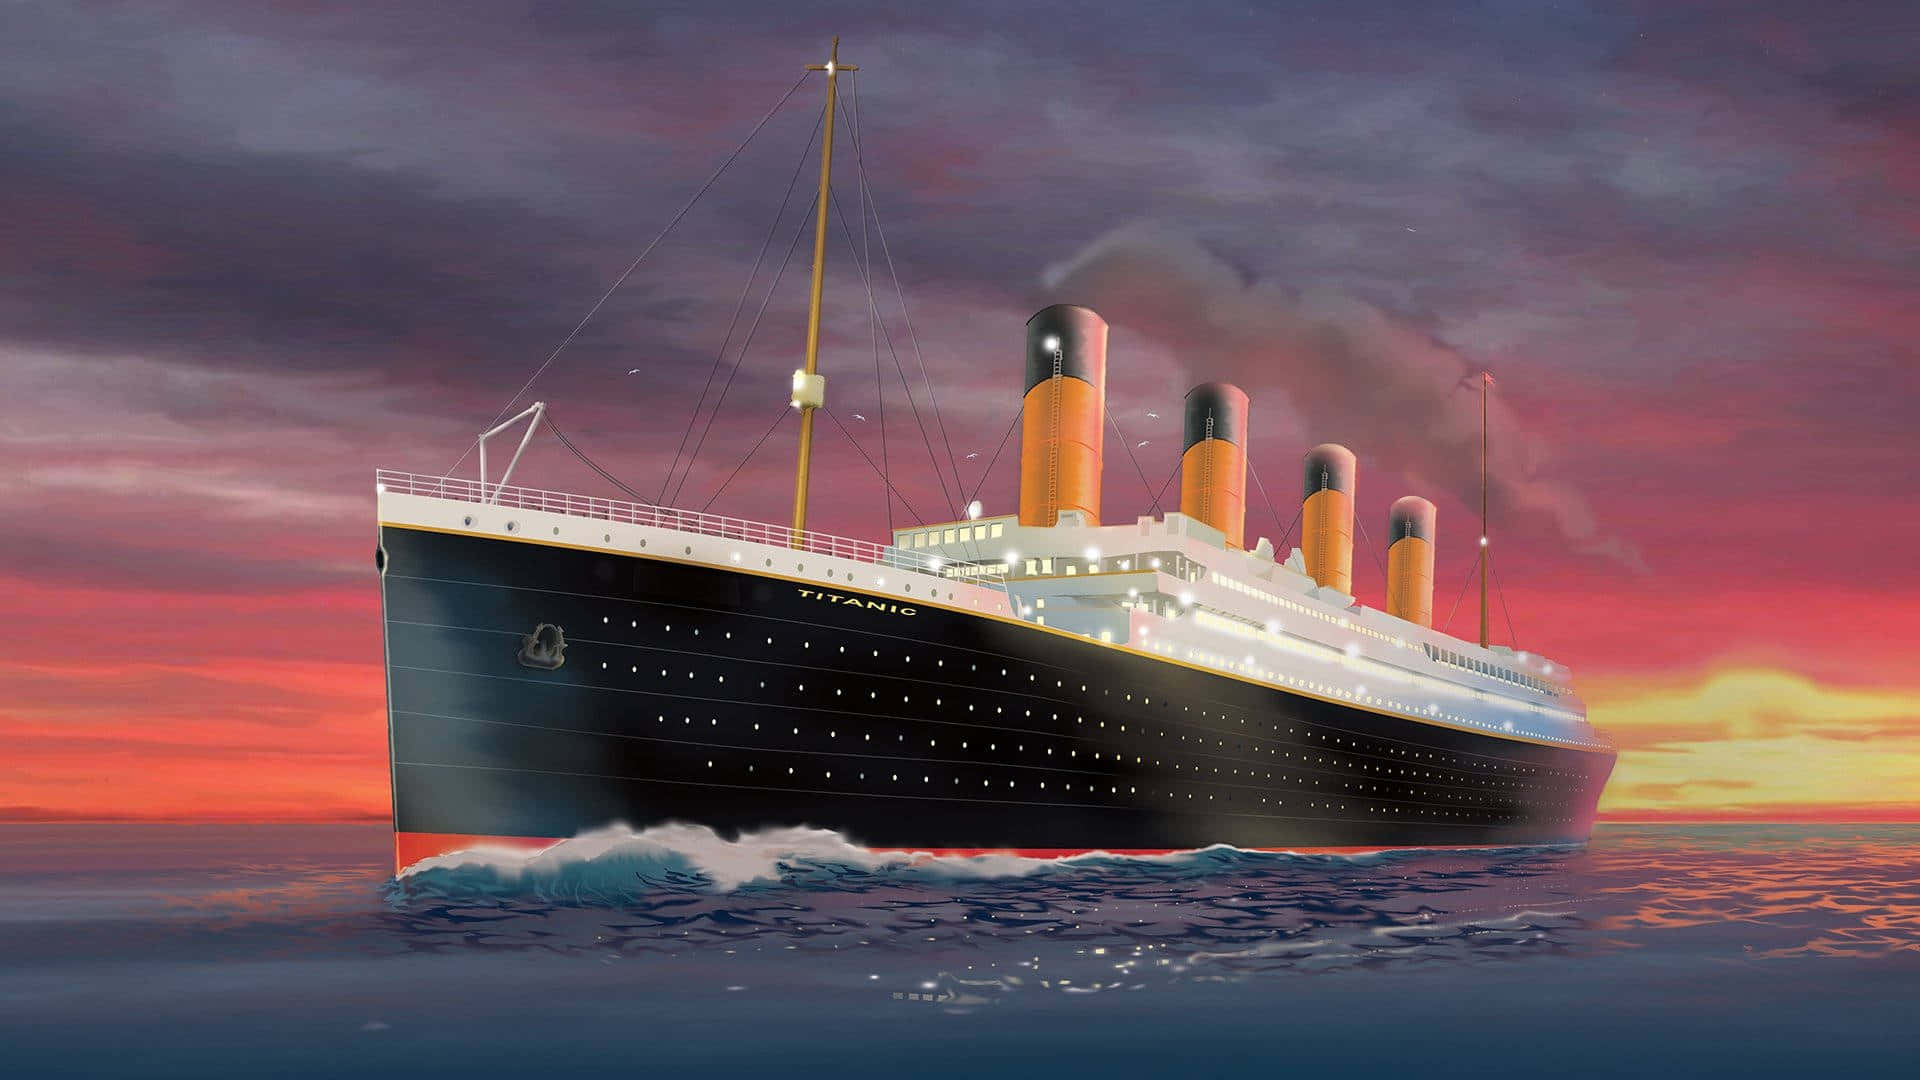 Dasikonische Kreuzfahrtschiff Titanic